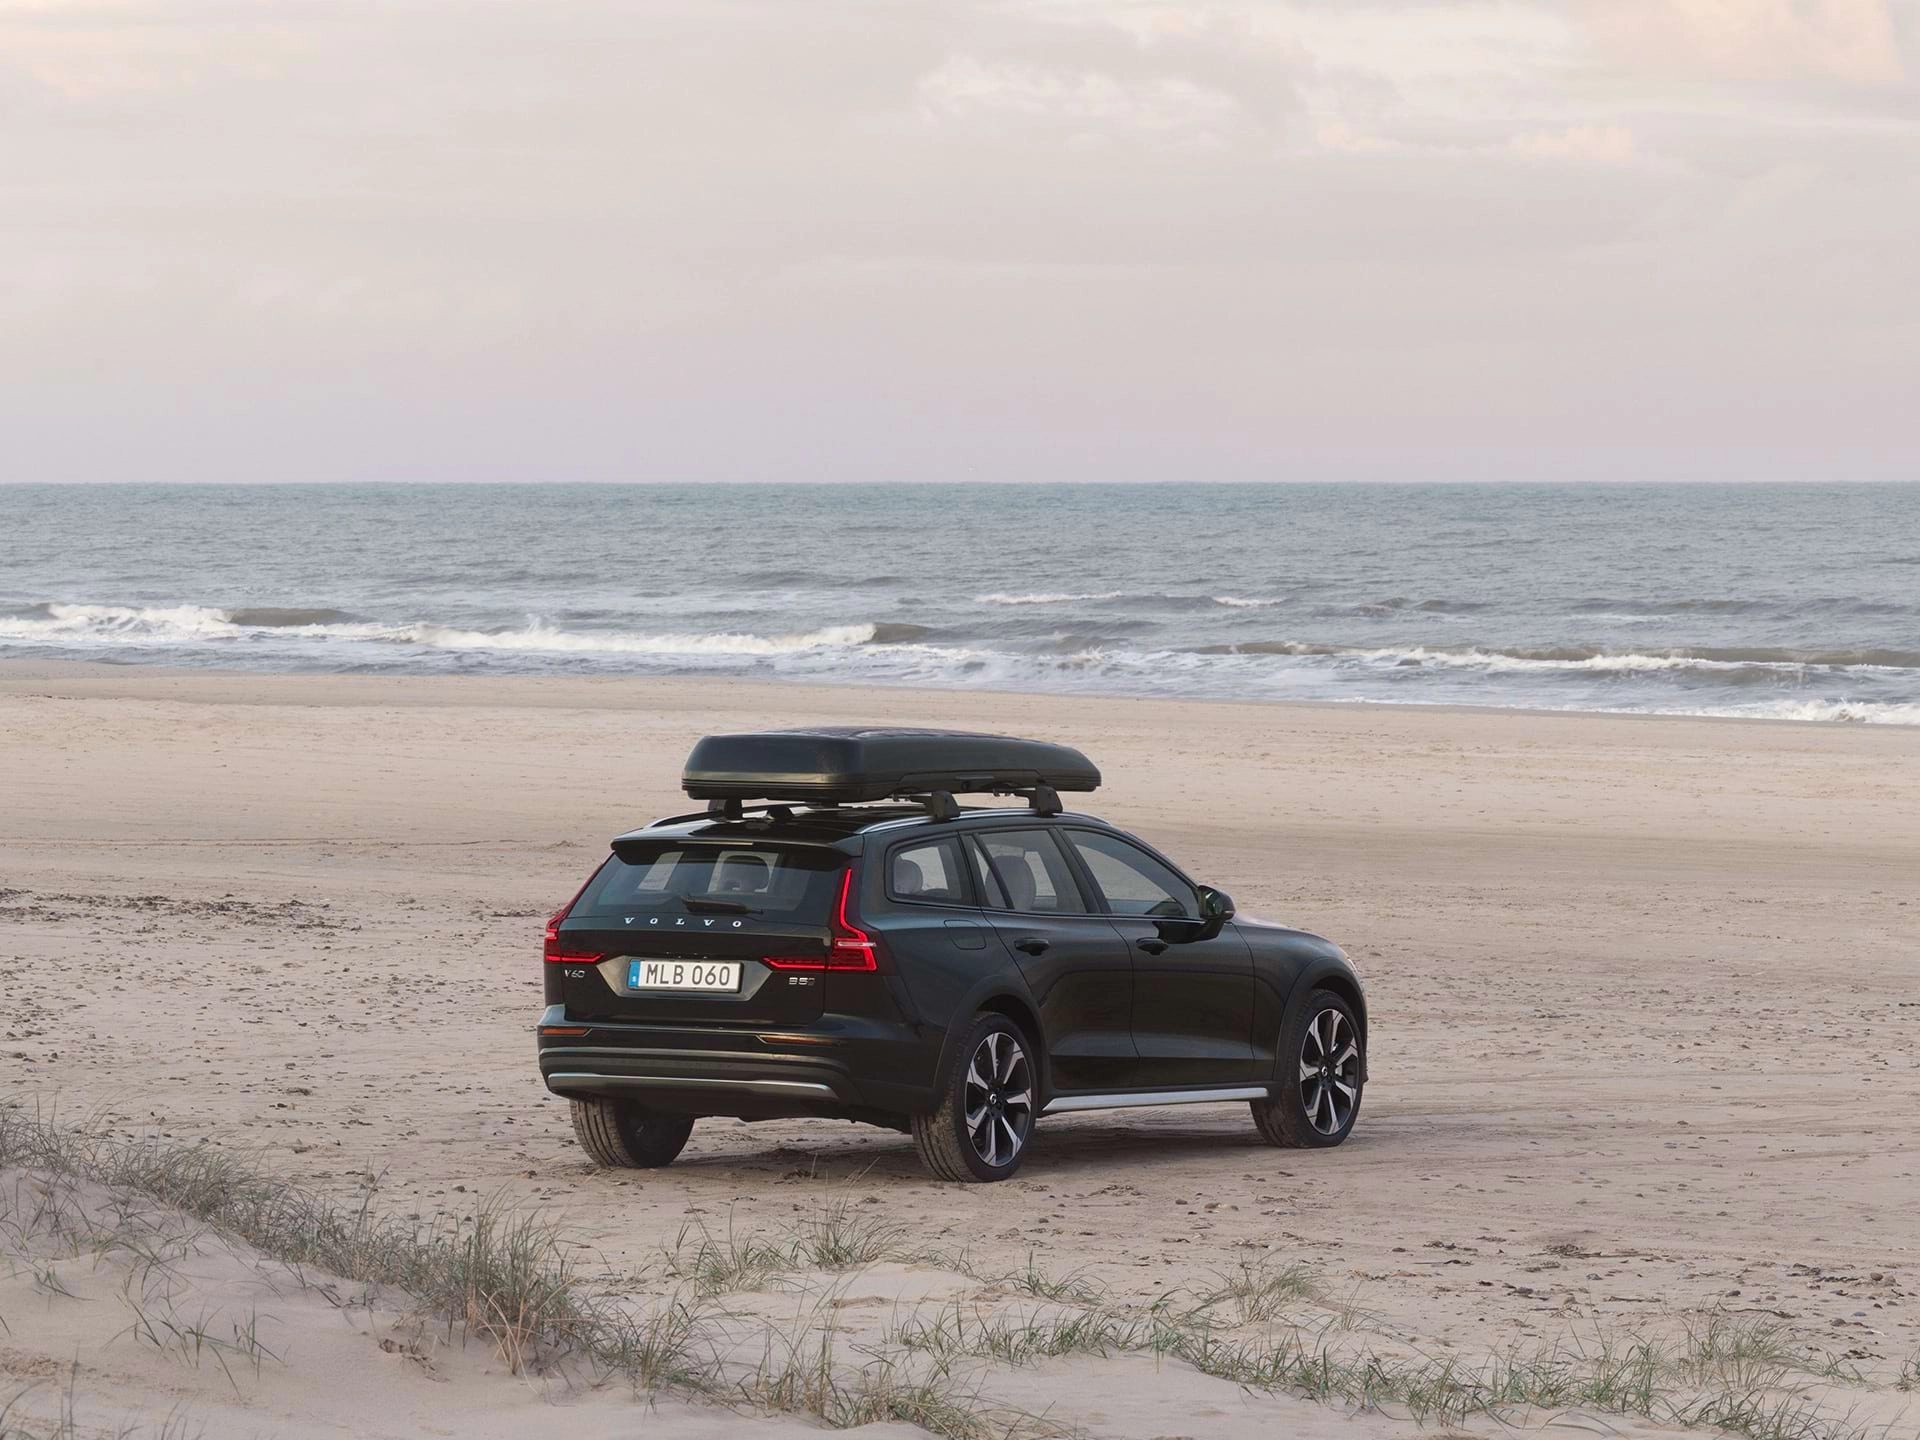 Универсал Volvo с багажником на крыше, припаркованный на песчаном пляже.